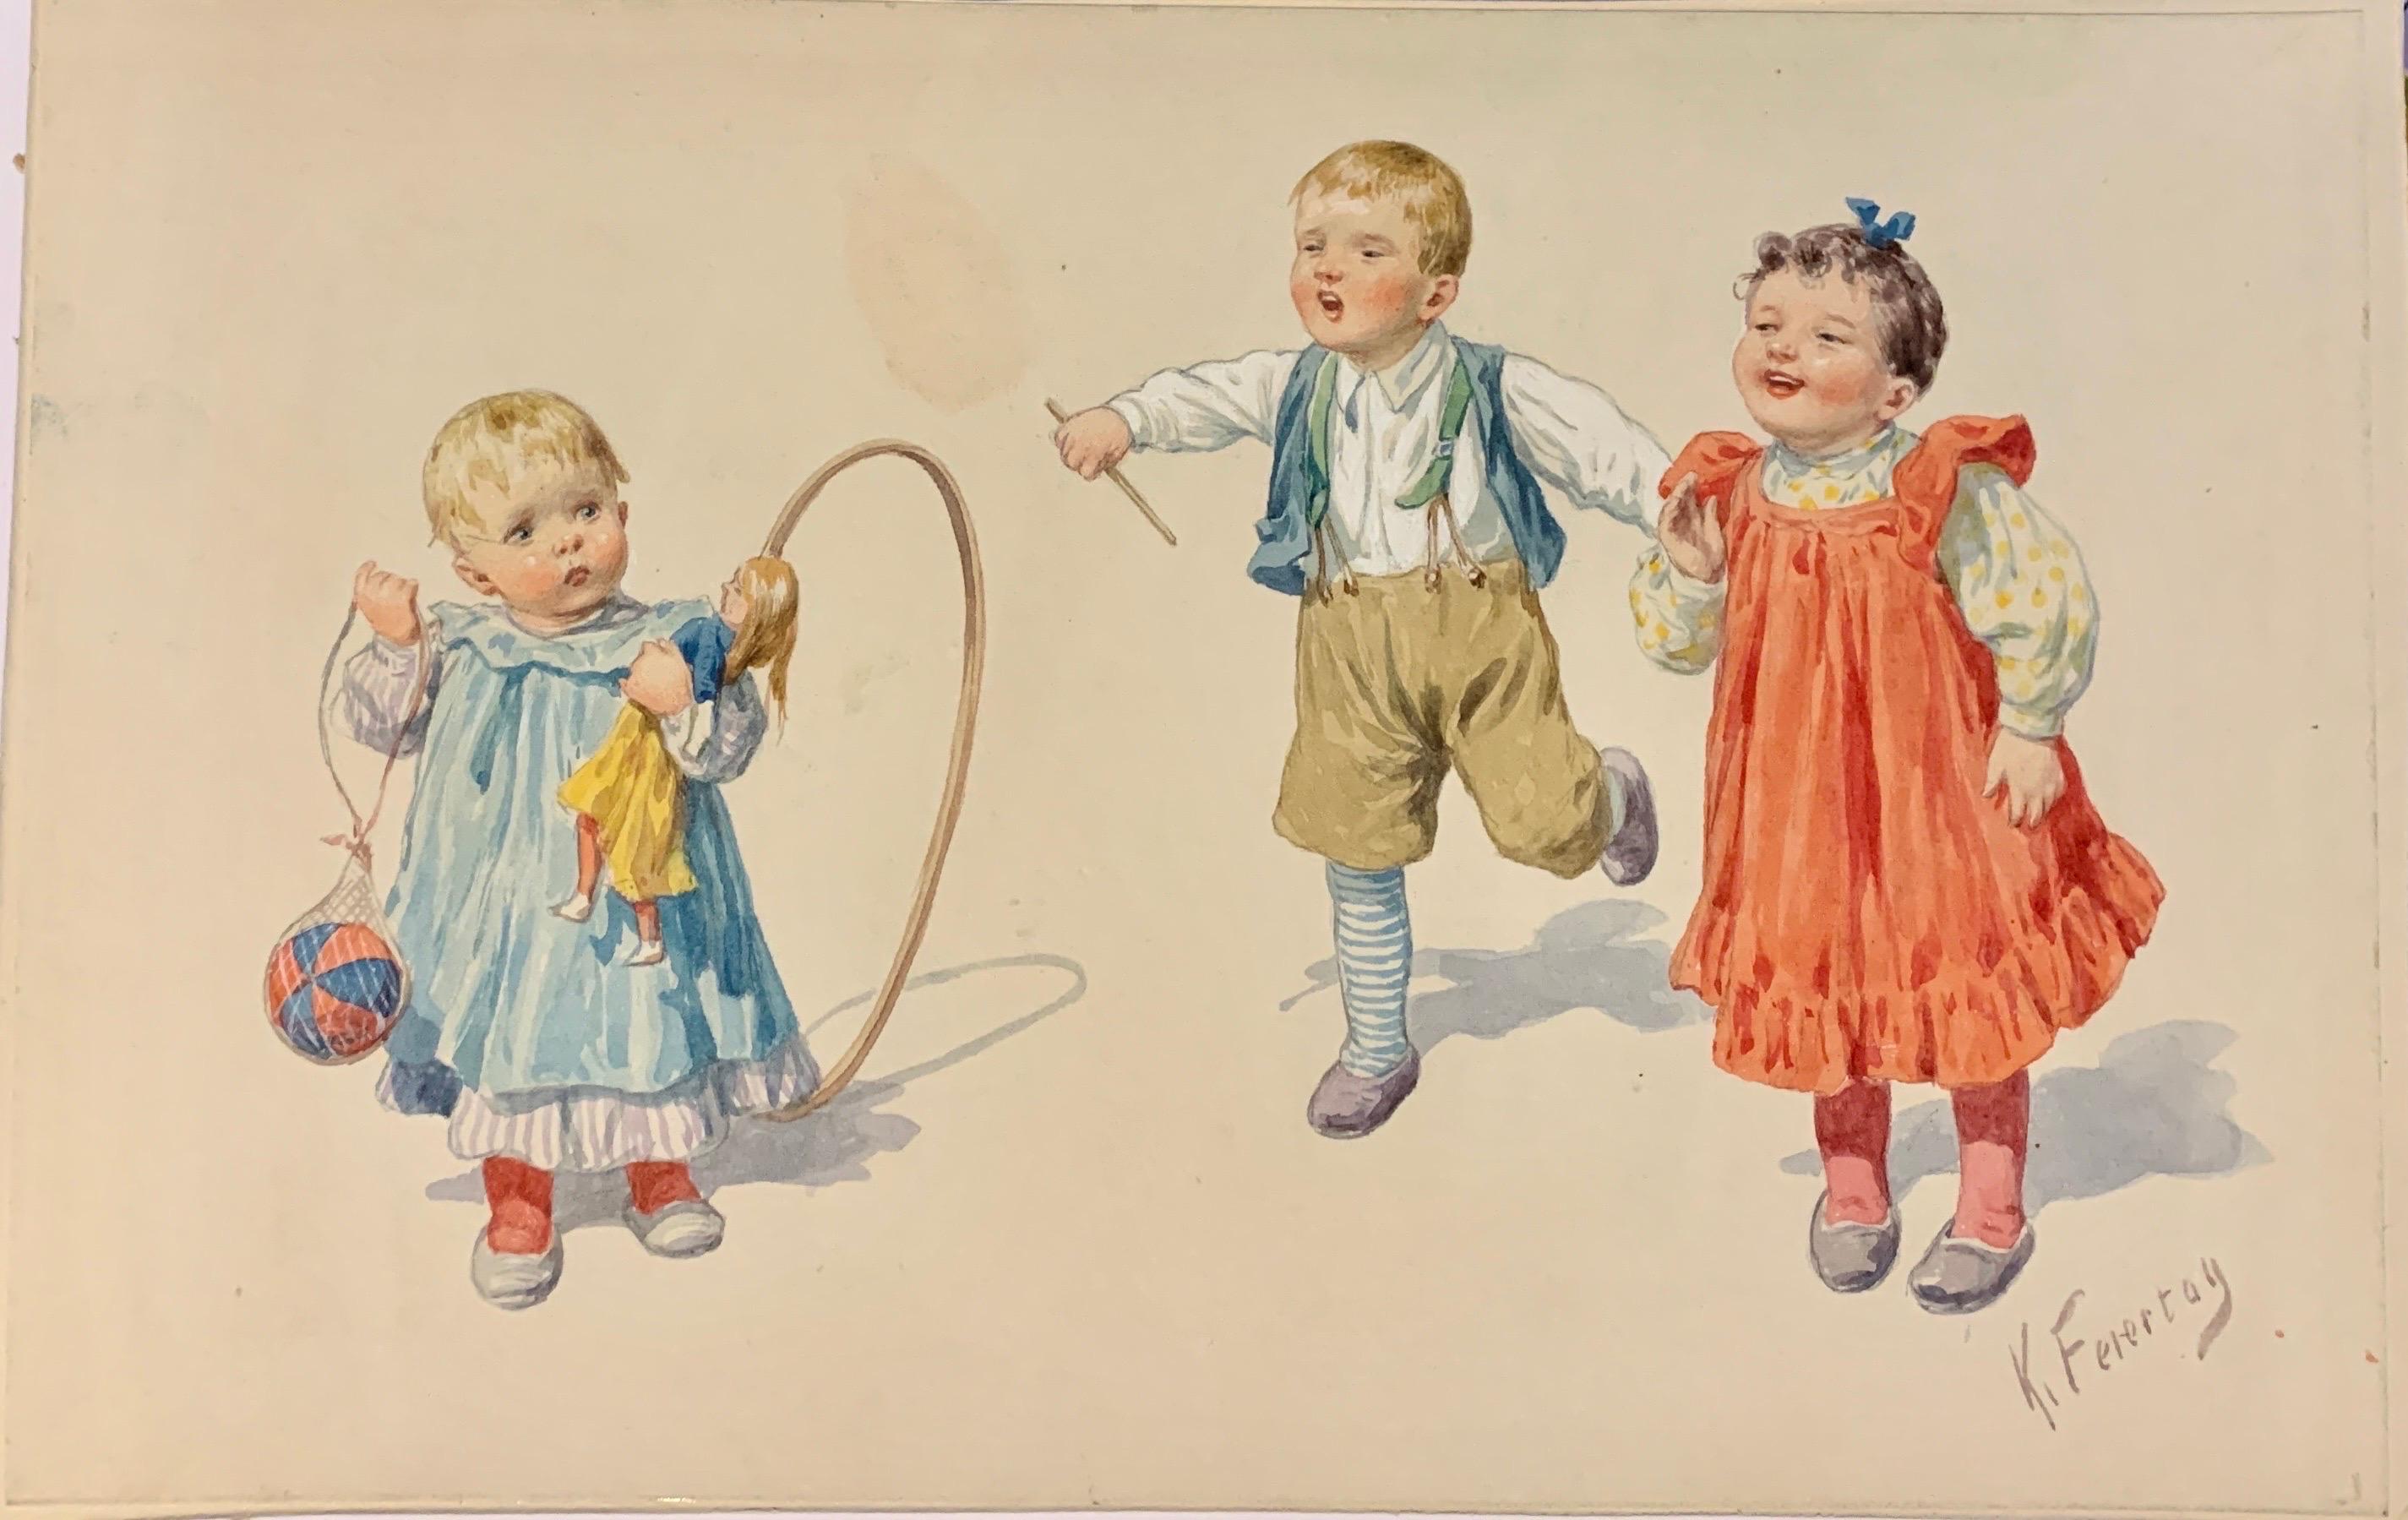 Deutsches Aquarell des frühen 20. Jahrhunderts mit Kindertänzern in traditioneller Kleidung